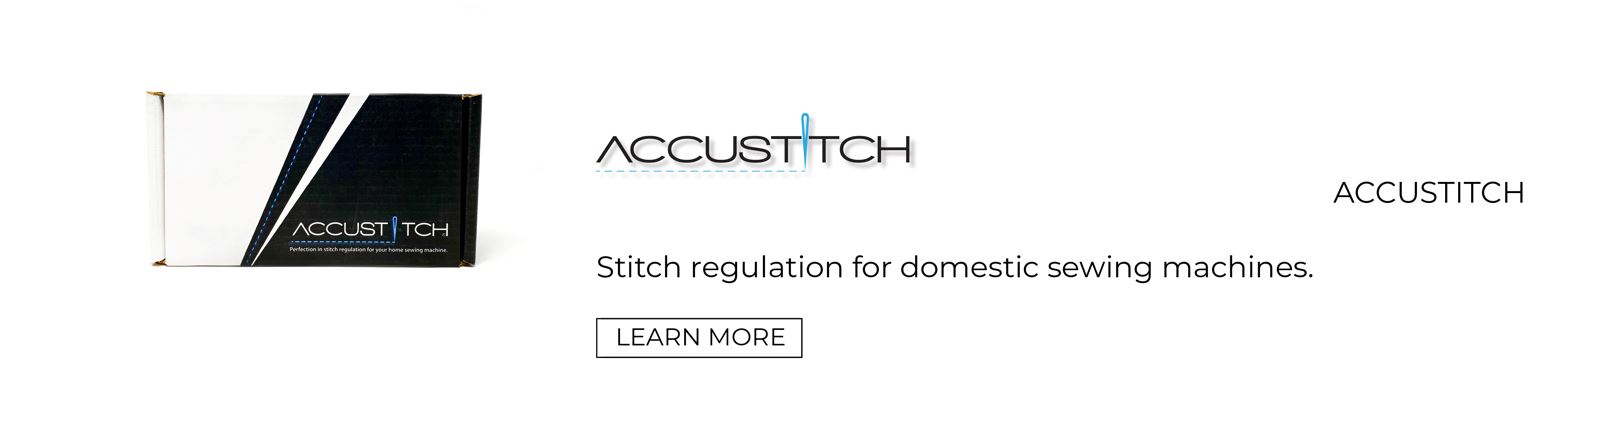 Accustitch Logo Black